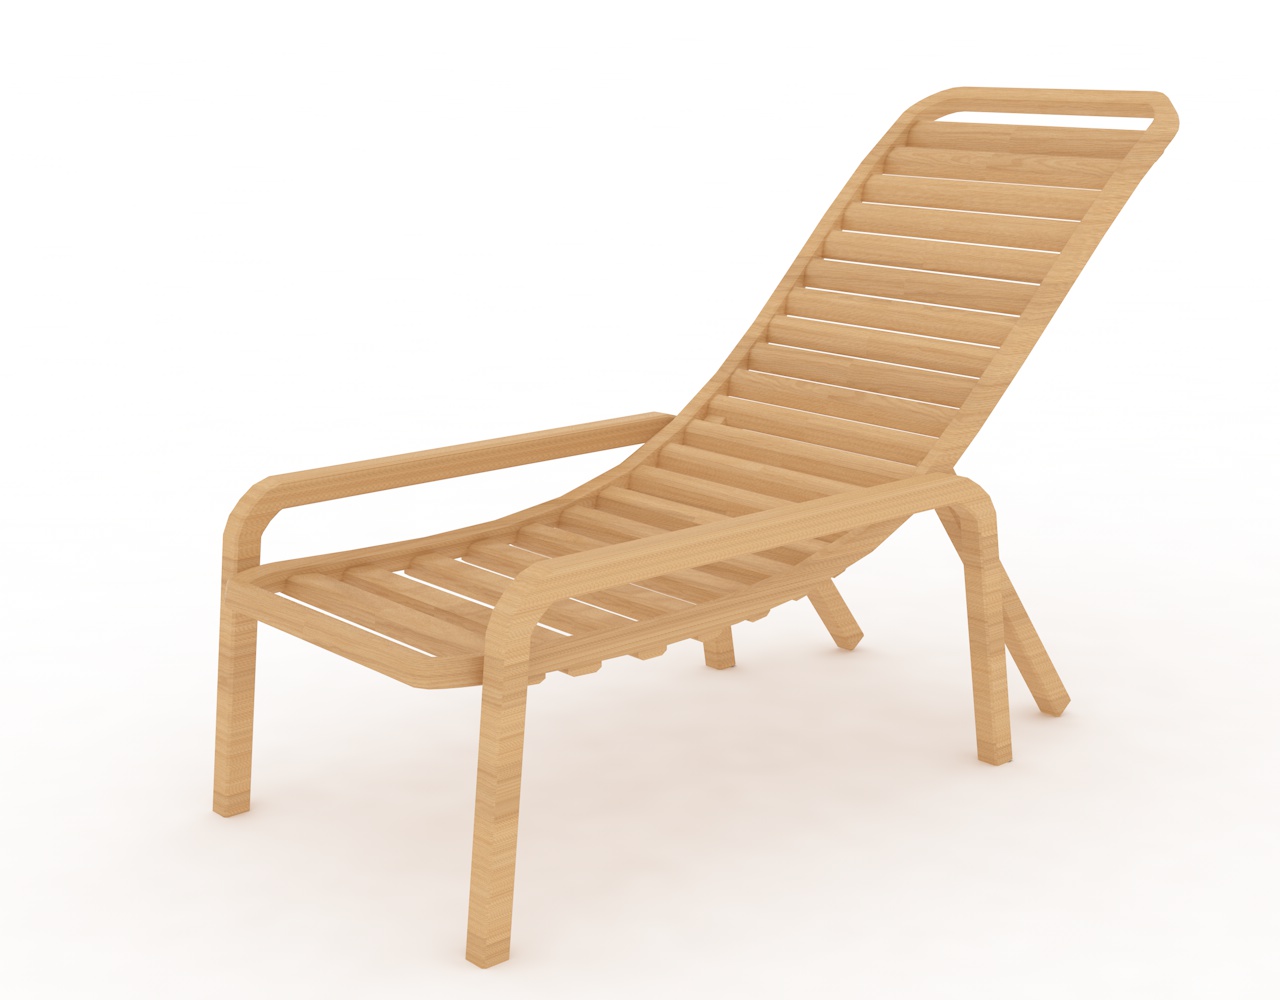 3D model na plážové židle